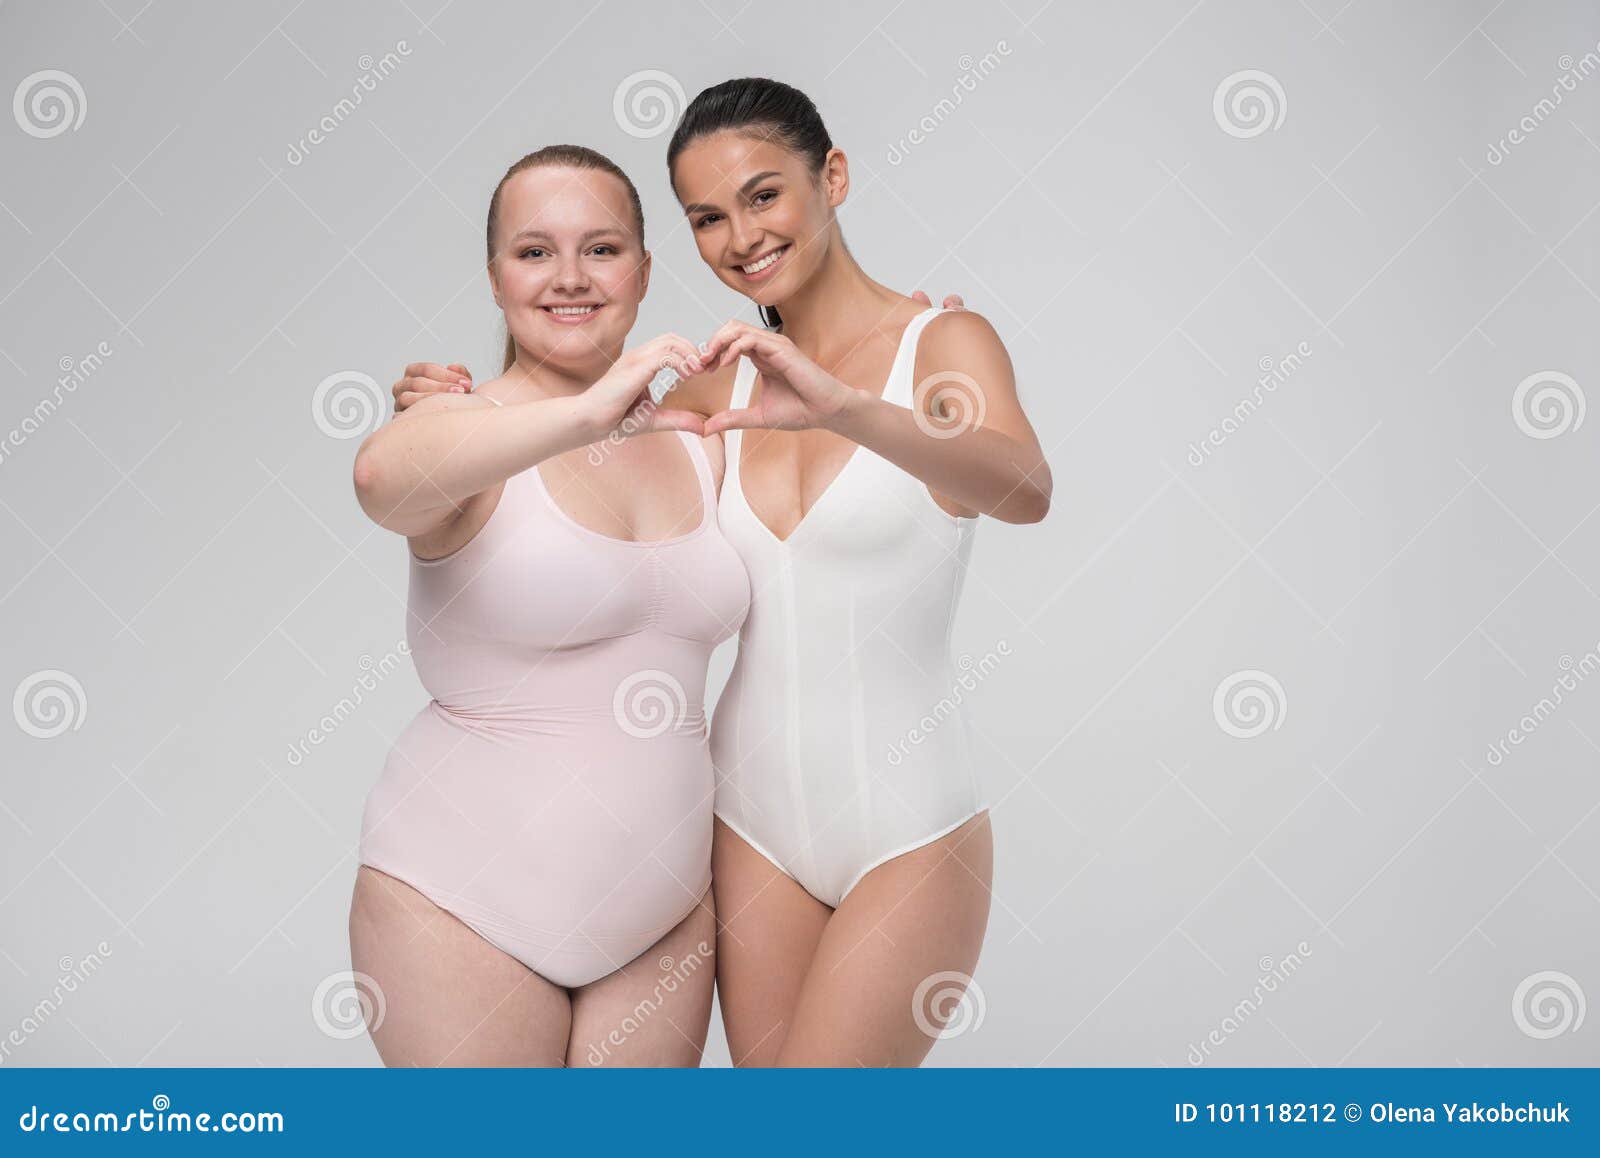 Fat And Skinny Lesbians